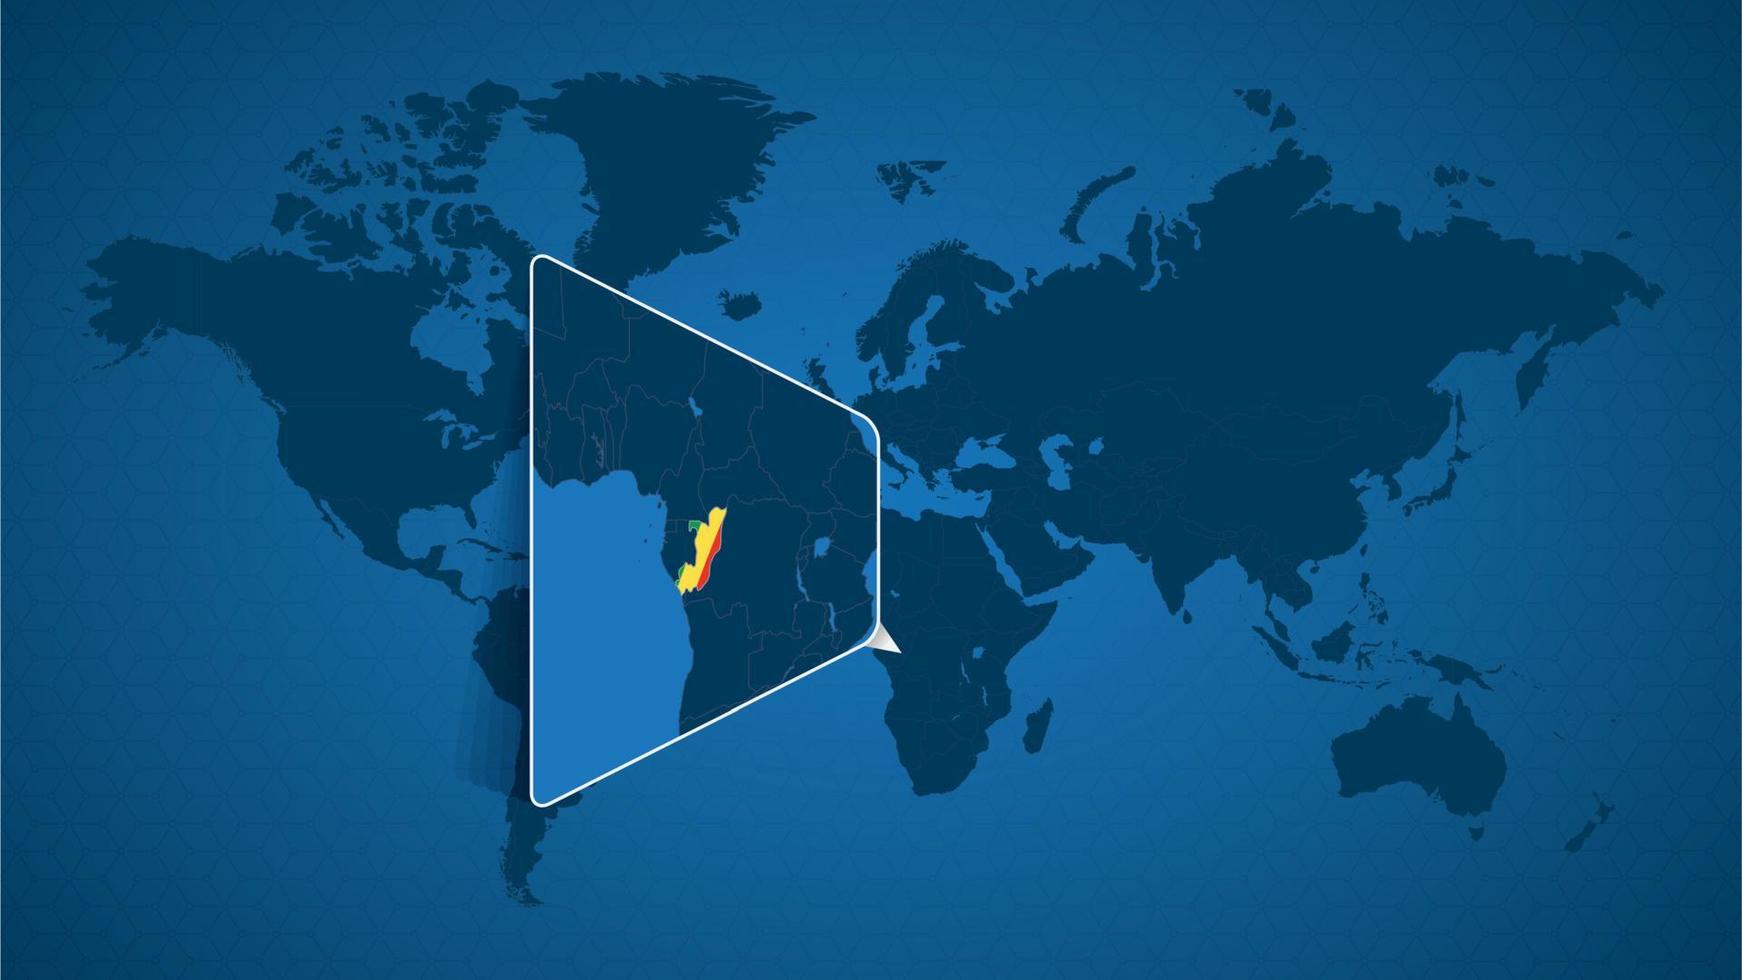 mappa del mondo dettagliata con mappa ingrandita appuntata del congo e dei paesi vicini. vettore